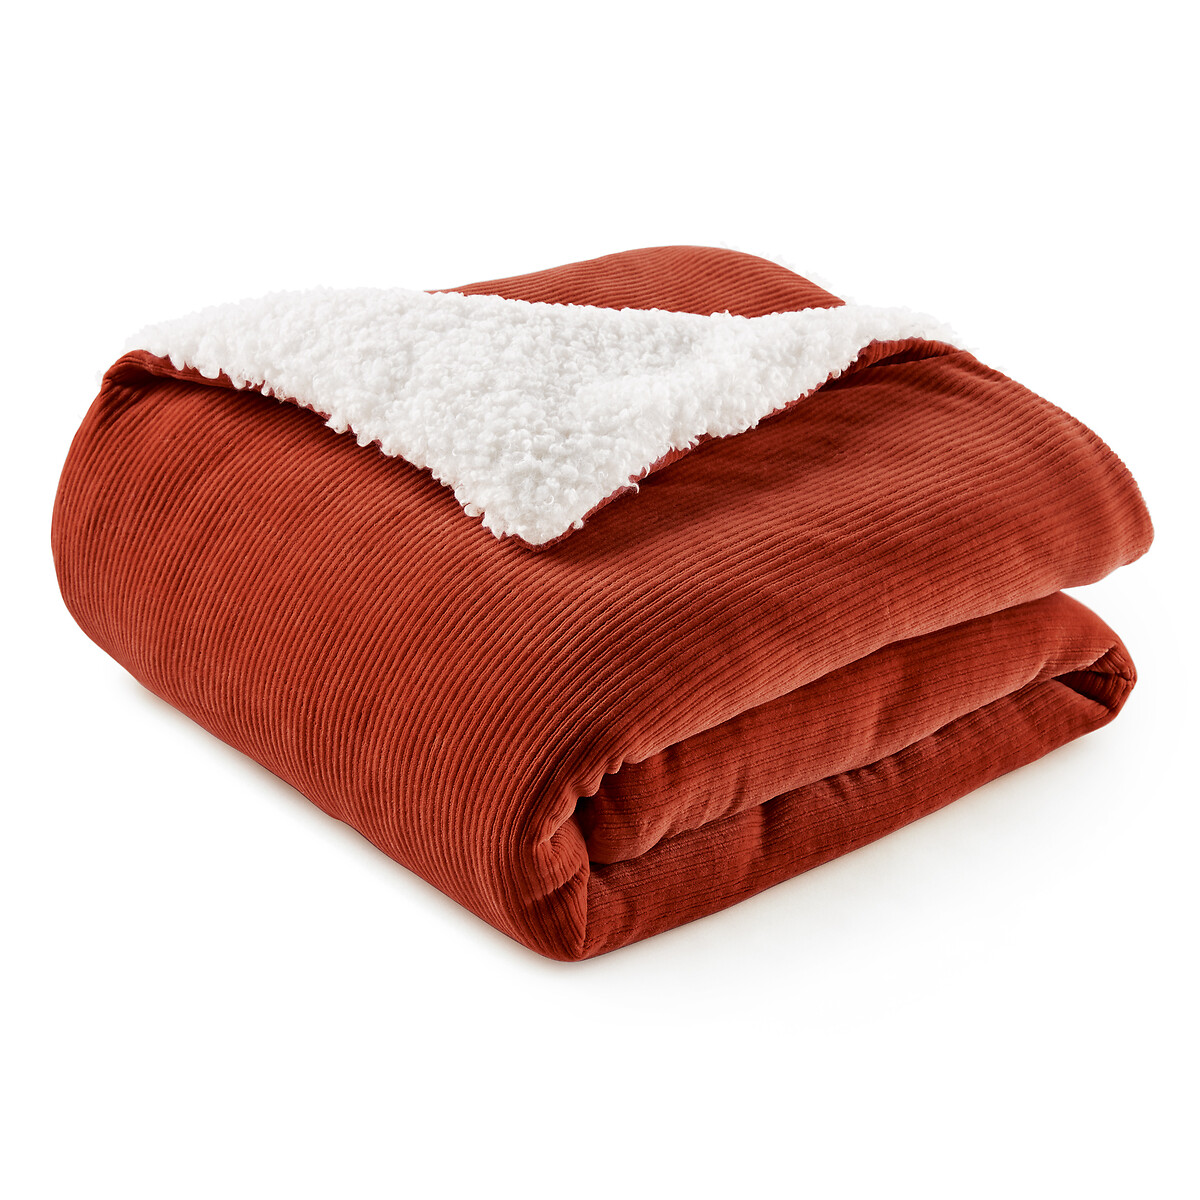 Одеяло LaRedoute Ouate Velours 140 x 150 см оранжевый, размер 140 x 150 см - фото 3